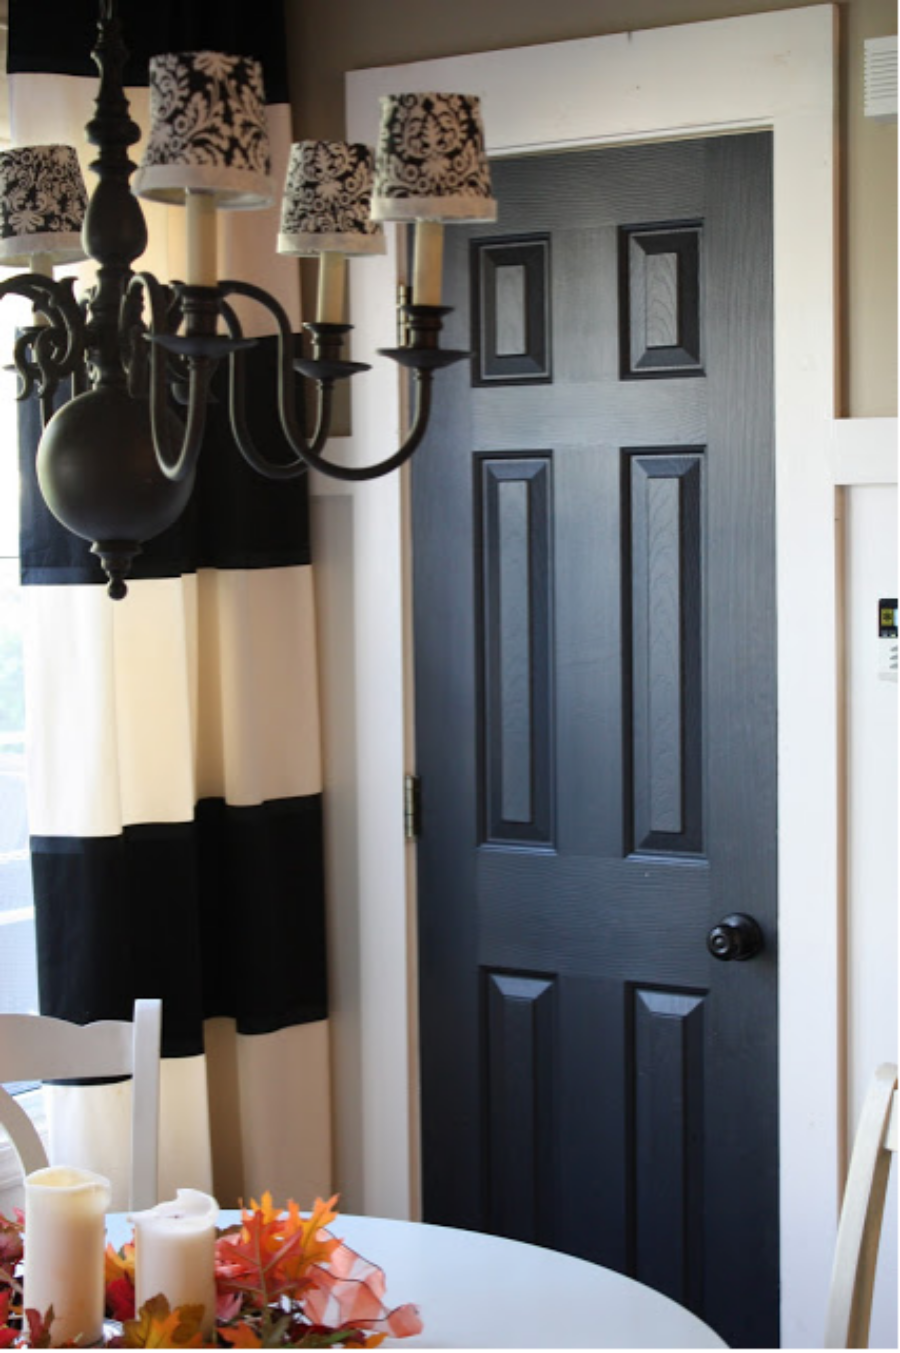 white interior with dark painted doors - builder grade door painted black